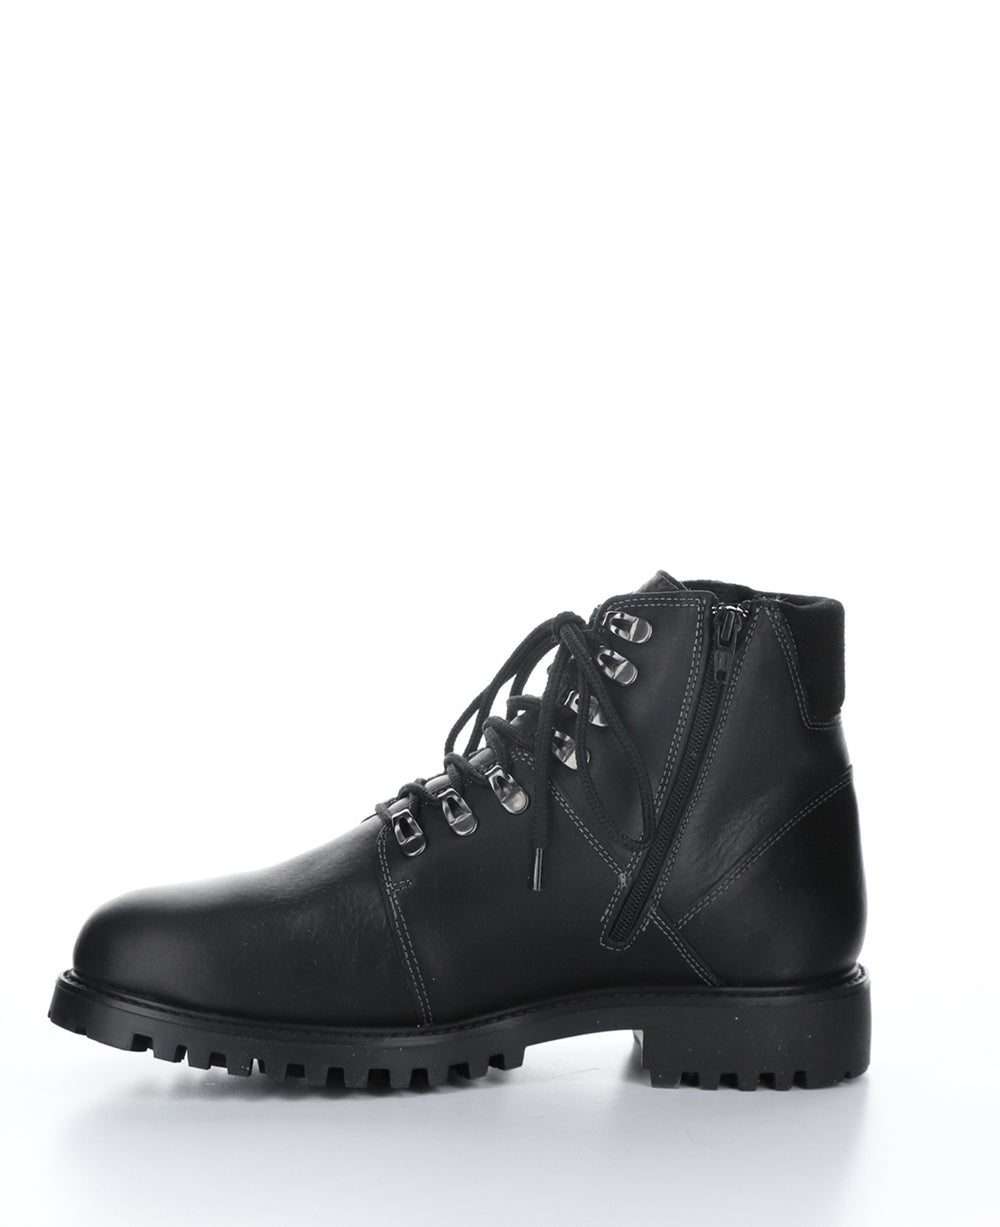 DAWSON Black Zip Up Boots|DAWSON Bottes avec Fermeture Zippée in Noir